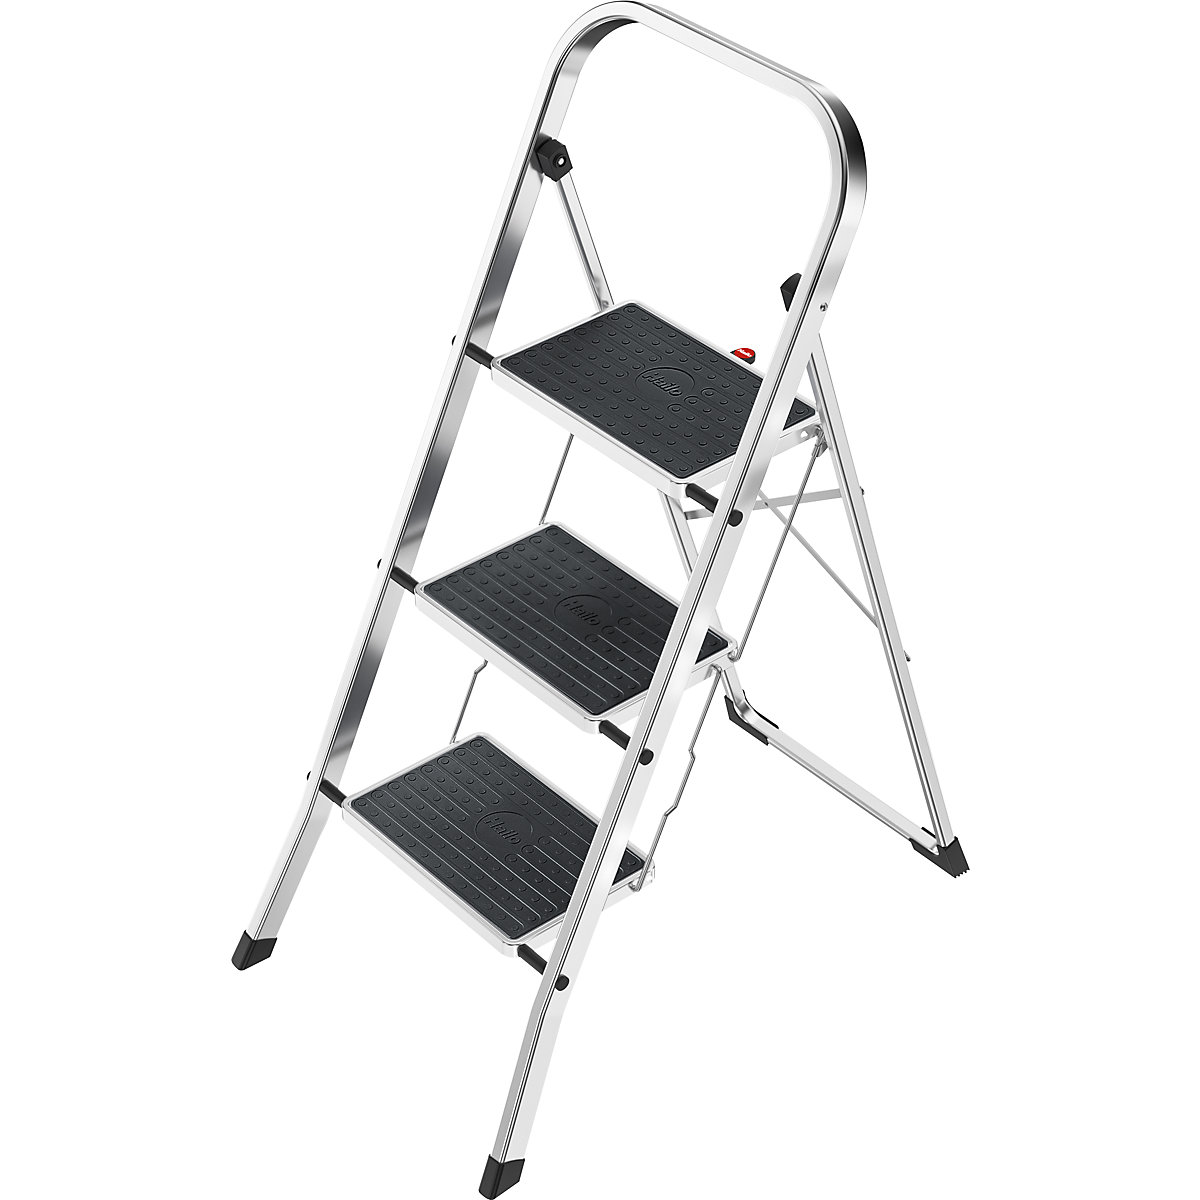 Escalerilla plegable K70 StandardLine – Hailo, armazón de aluminio, carga máx. 150 kg, 3 peldaños, altura entre peldaños 690 mm-8